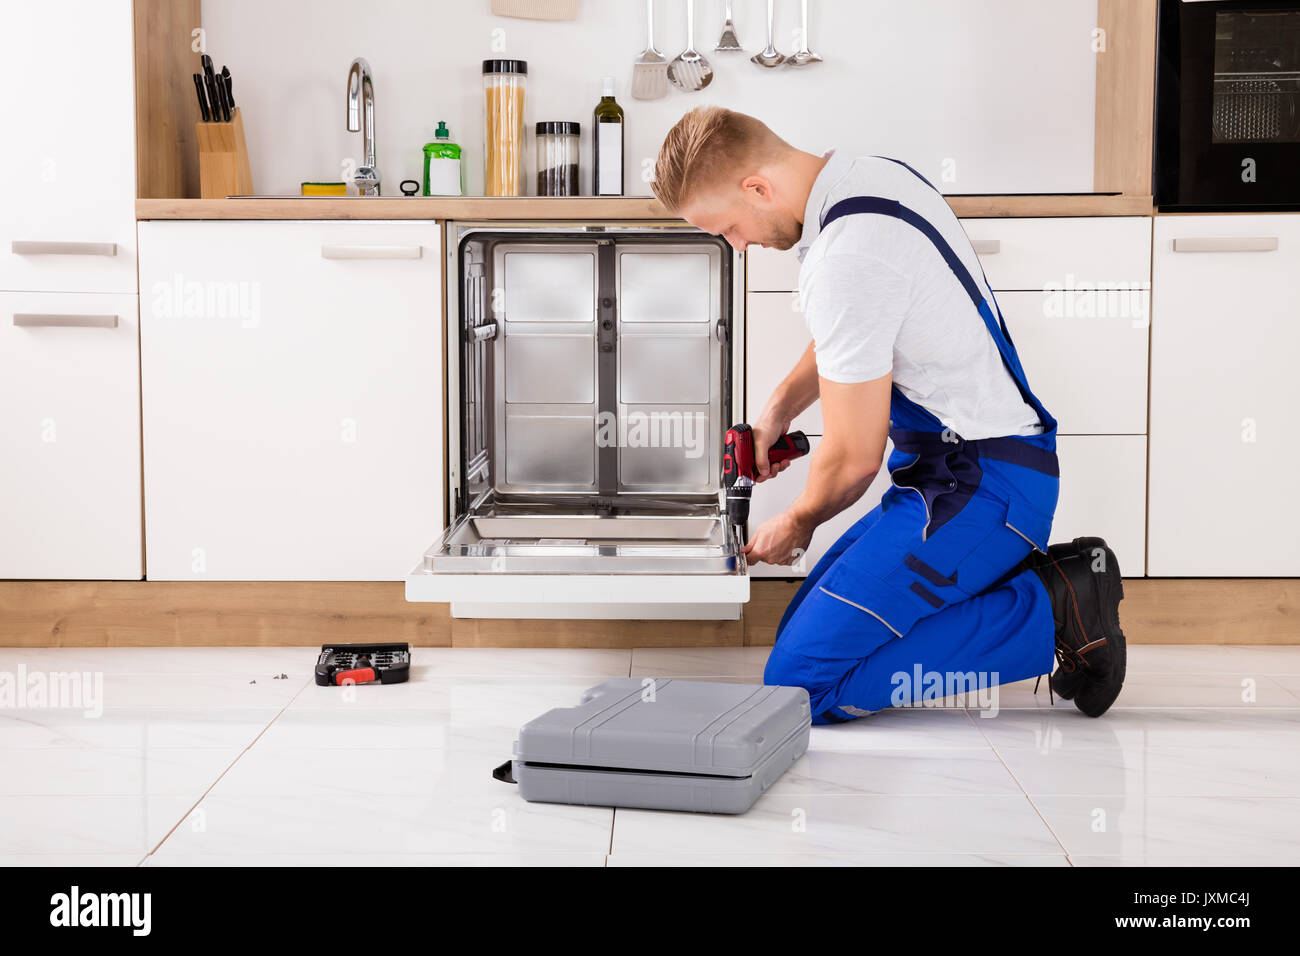 Junge Handwerker Service Arbeitnehmer Reparatur Geschirrspüler Gerät in der Küche Stockfoto